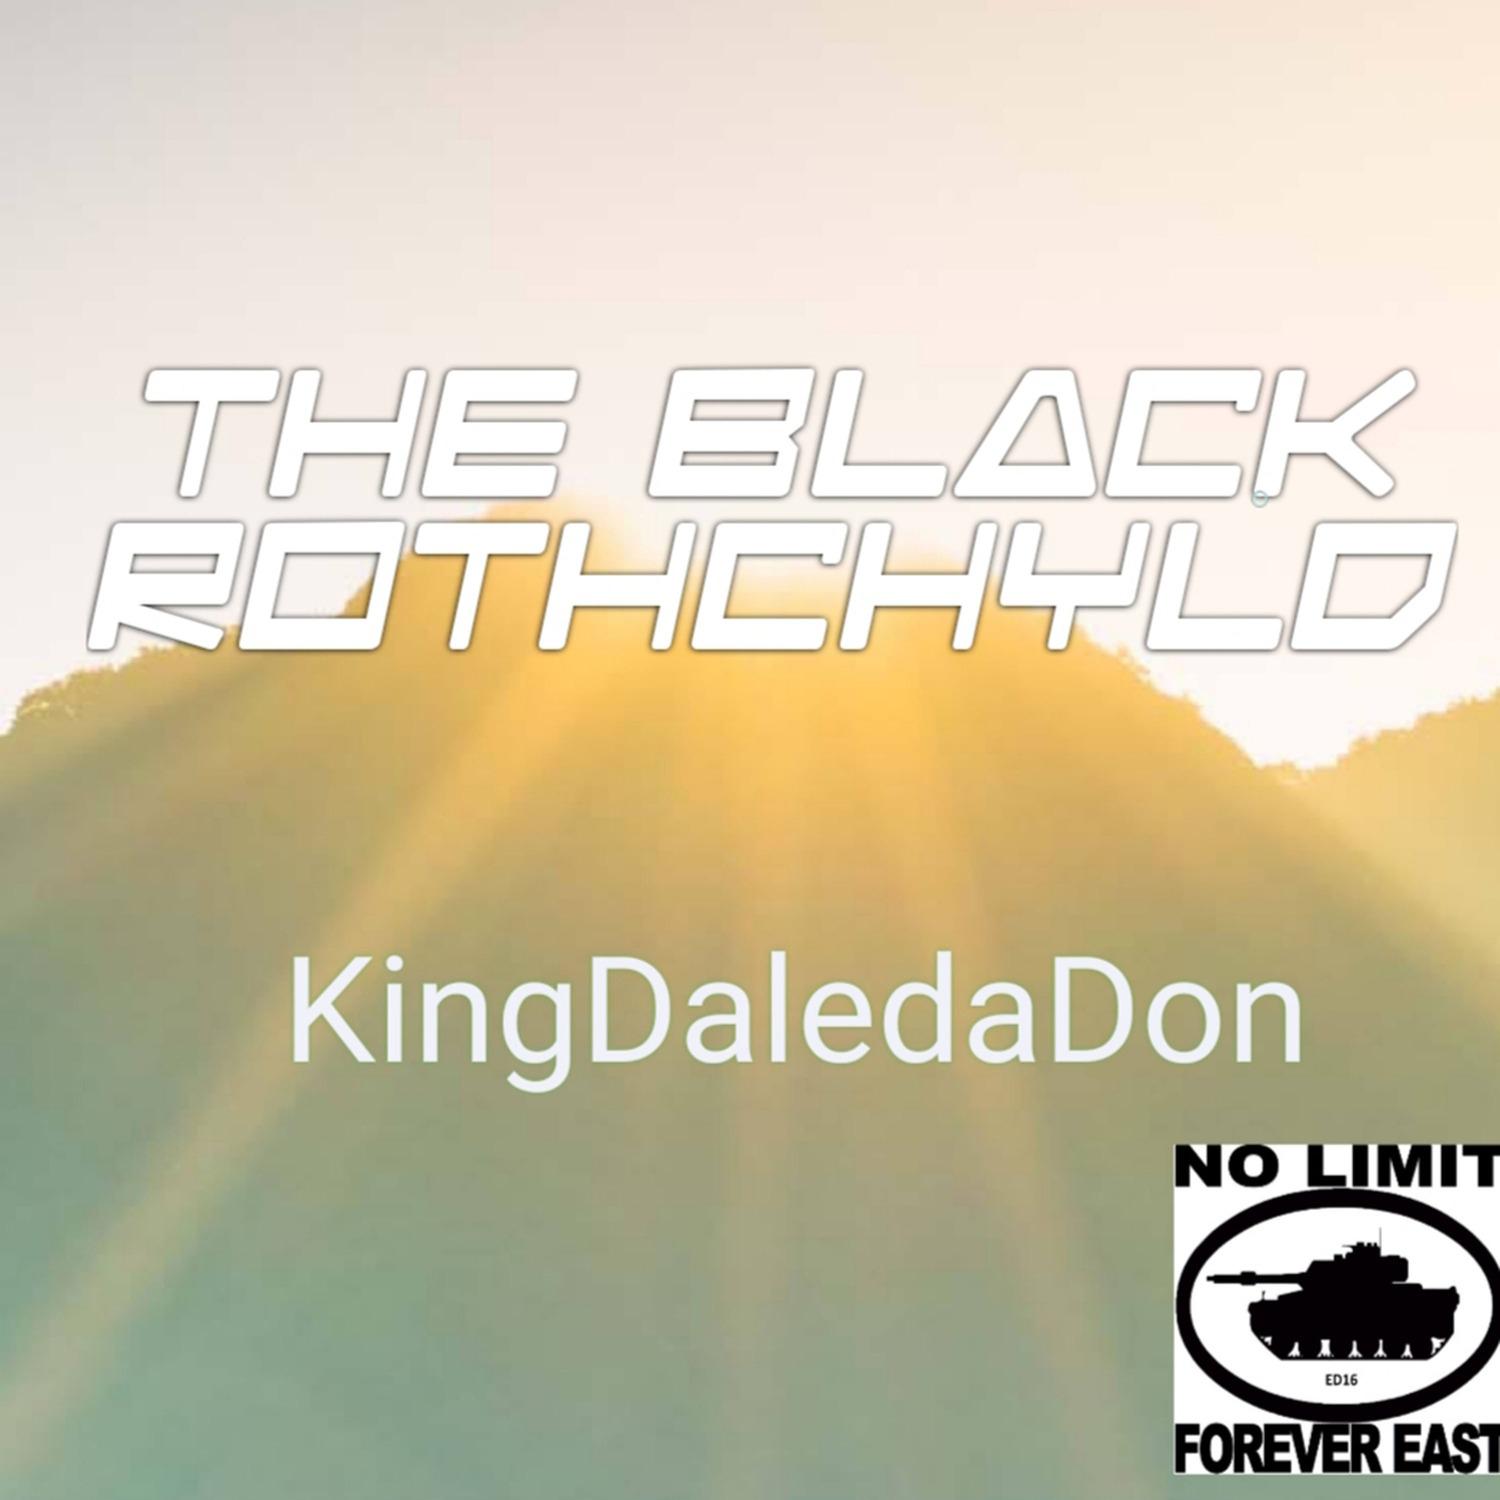 KingDaledaDon - Made for This